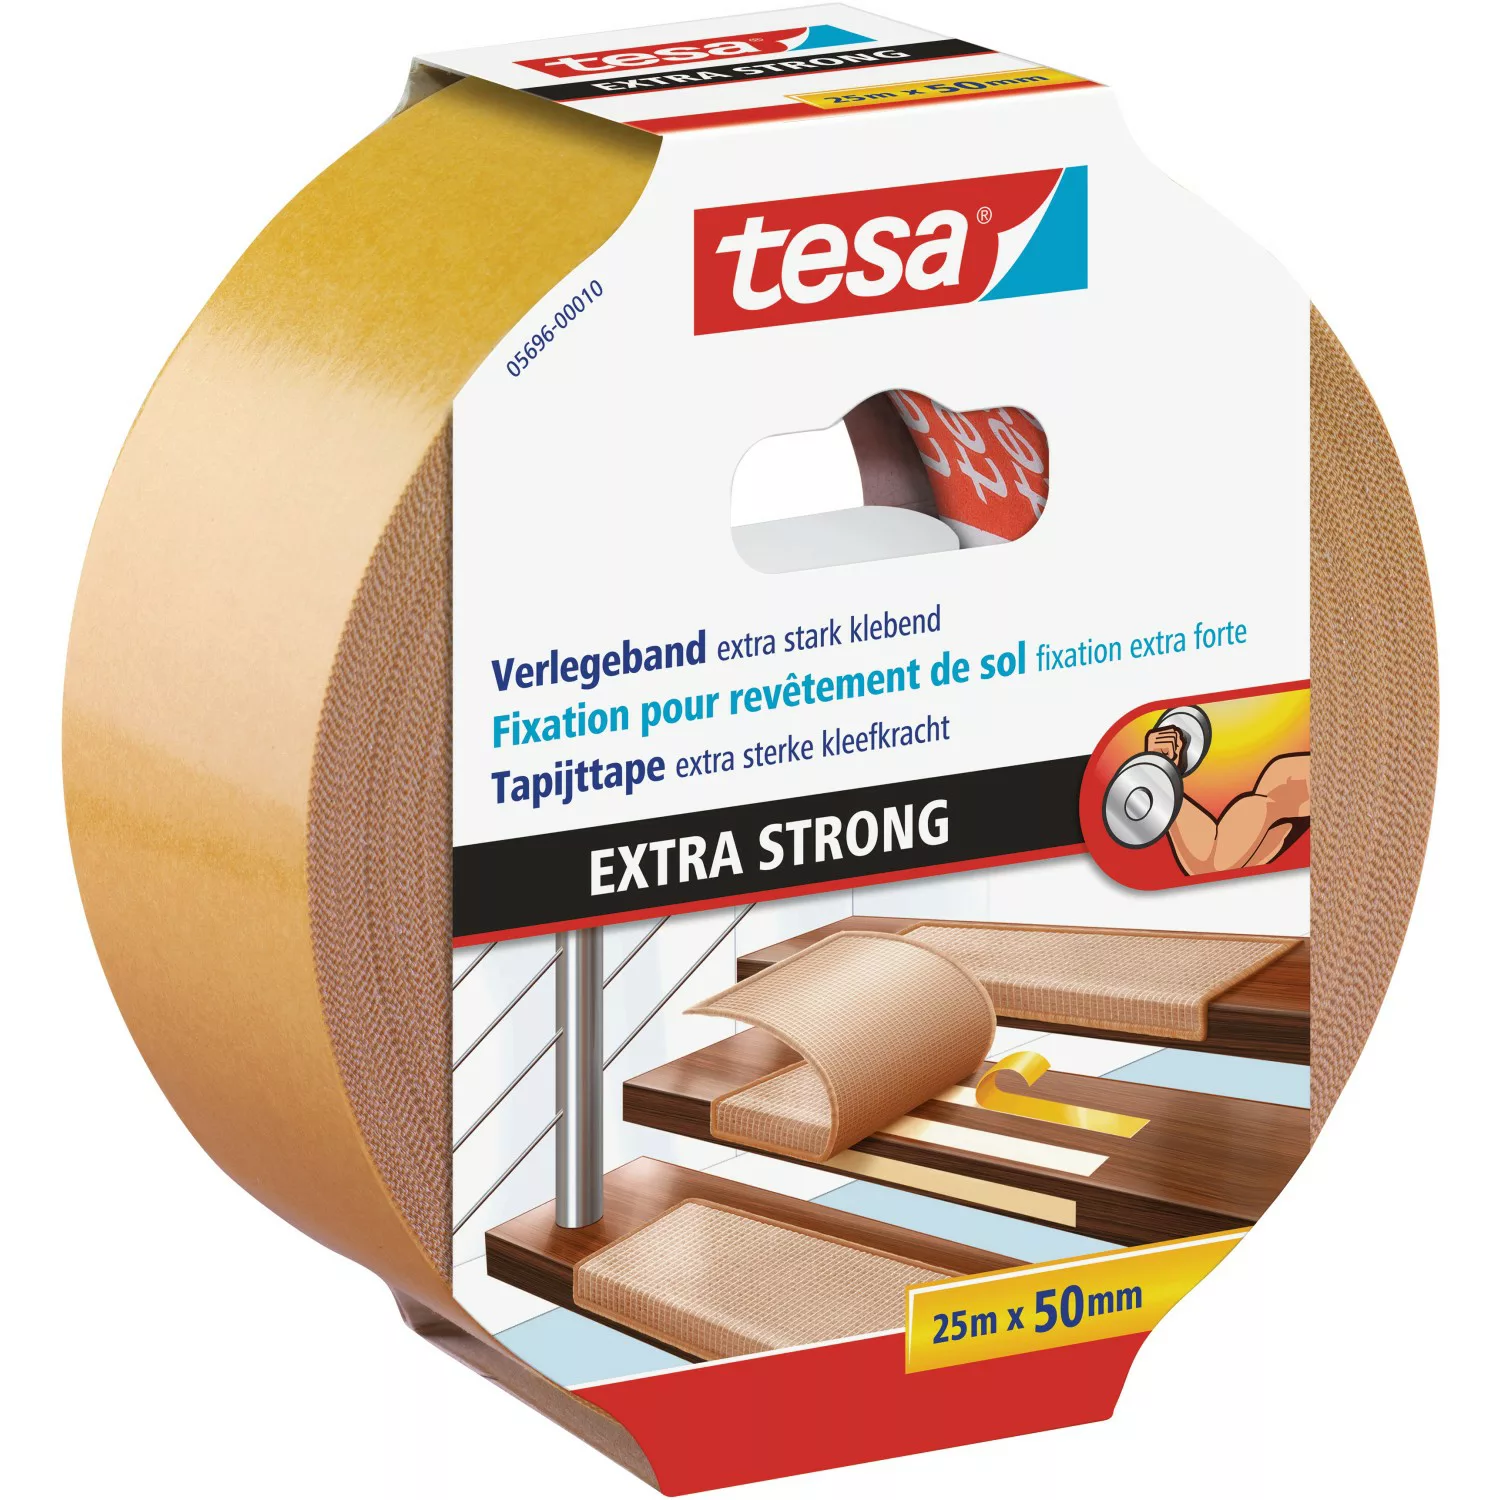 Tesa Verlegeband extra stark klebend 25 m x 50 mm günstig online kaufen